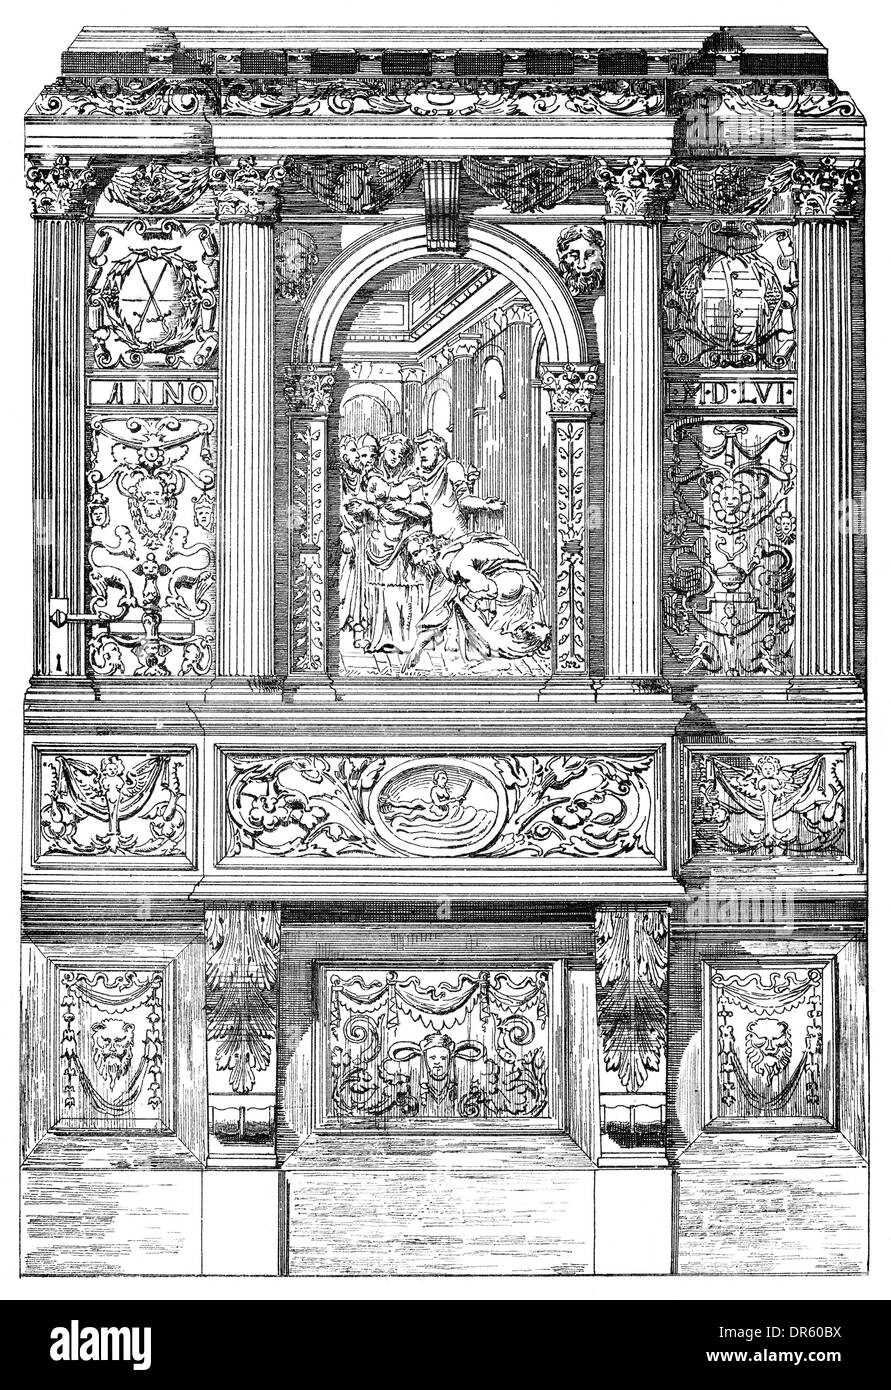 Portail de l'église du château, de style Renaissance, aujourd'hui détruit, Dresde, Saxe, Allemagne, Banque D'Images